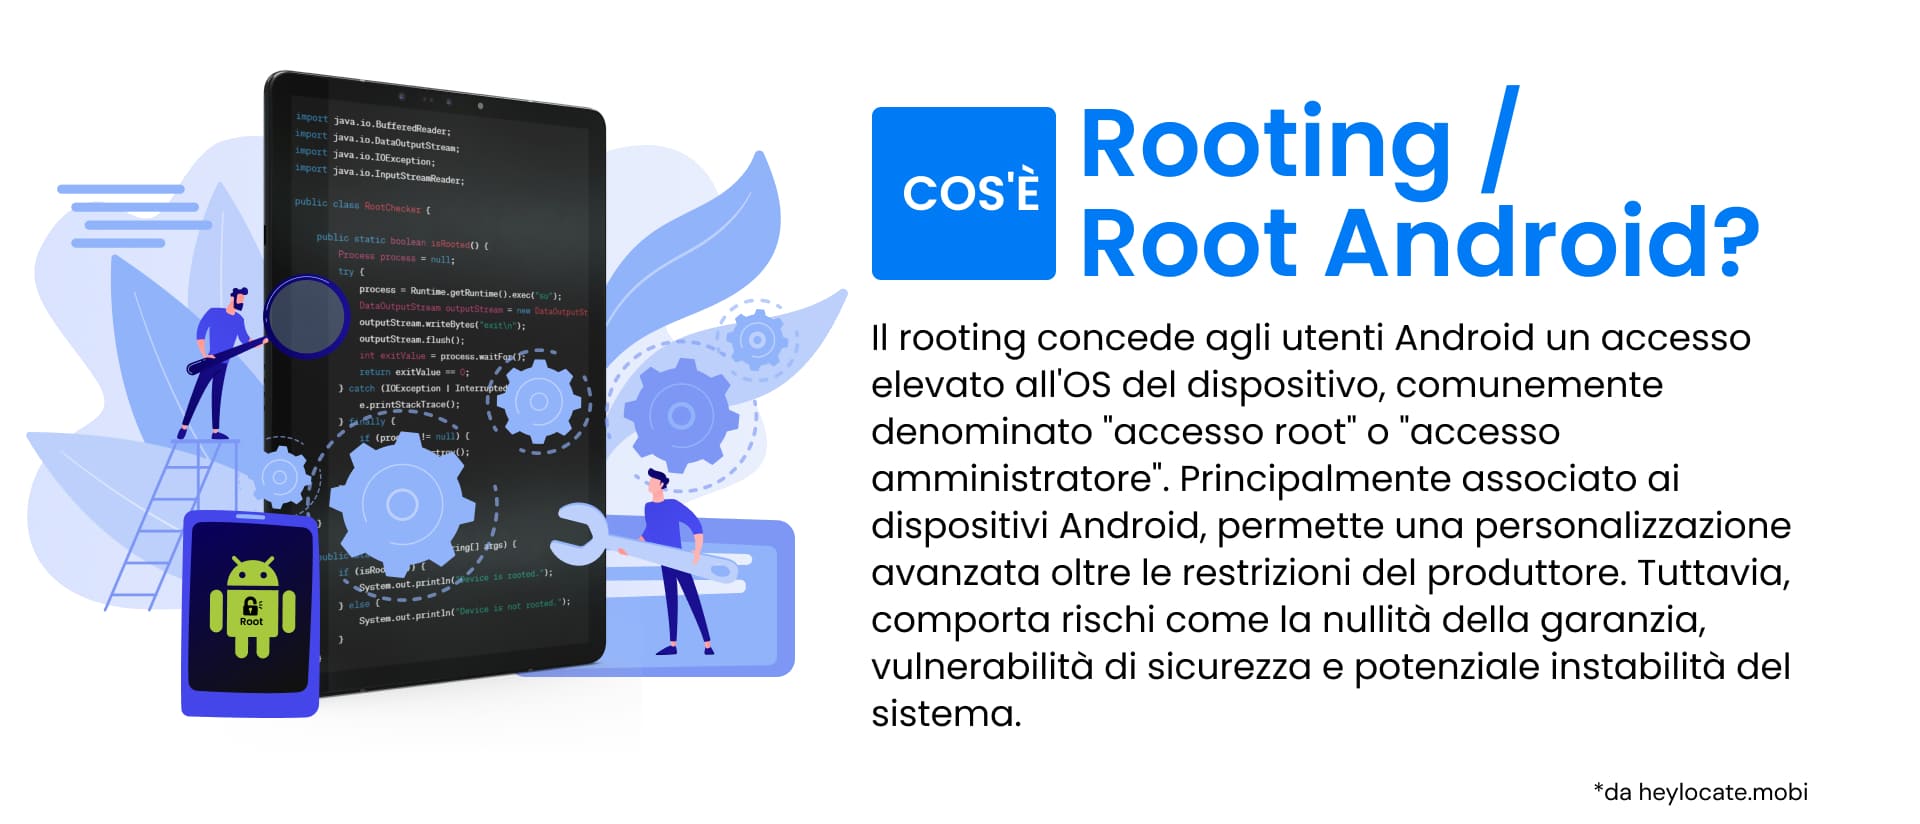 L'infografica serve come guida al concetto di "rooting" nei dispositivi Android, che comporta l'ottenimento di un controllo privilegiato noto come "accesso root" sul dispositivo, consentendo un'ampia personalizzazione oltre i limiti stabiliti dal produttore.